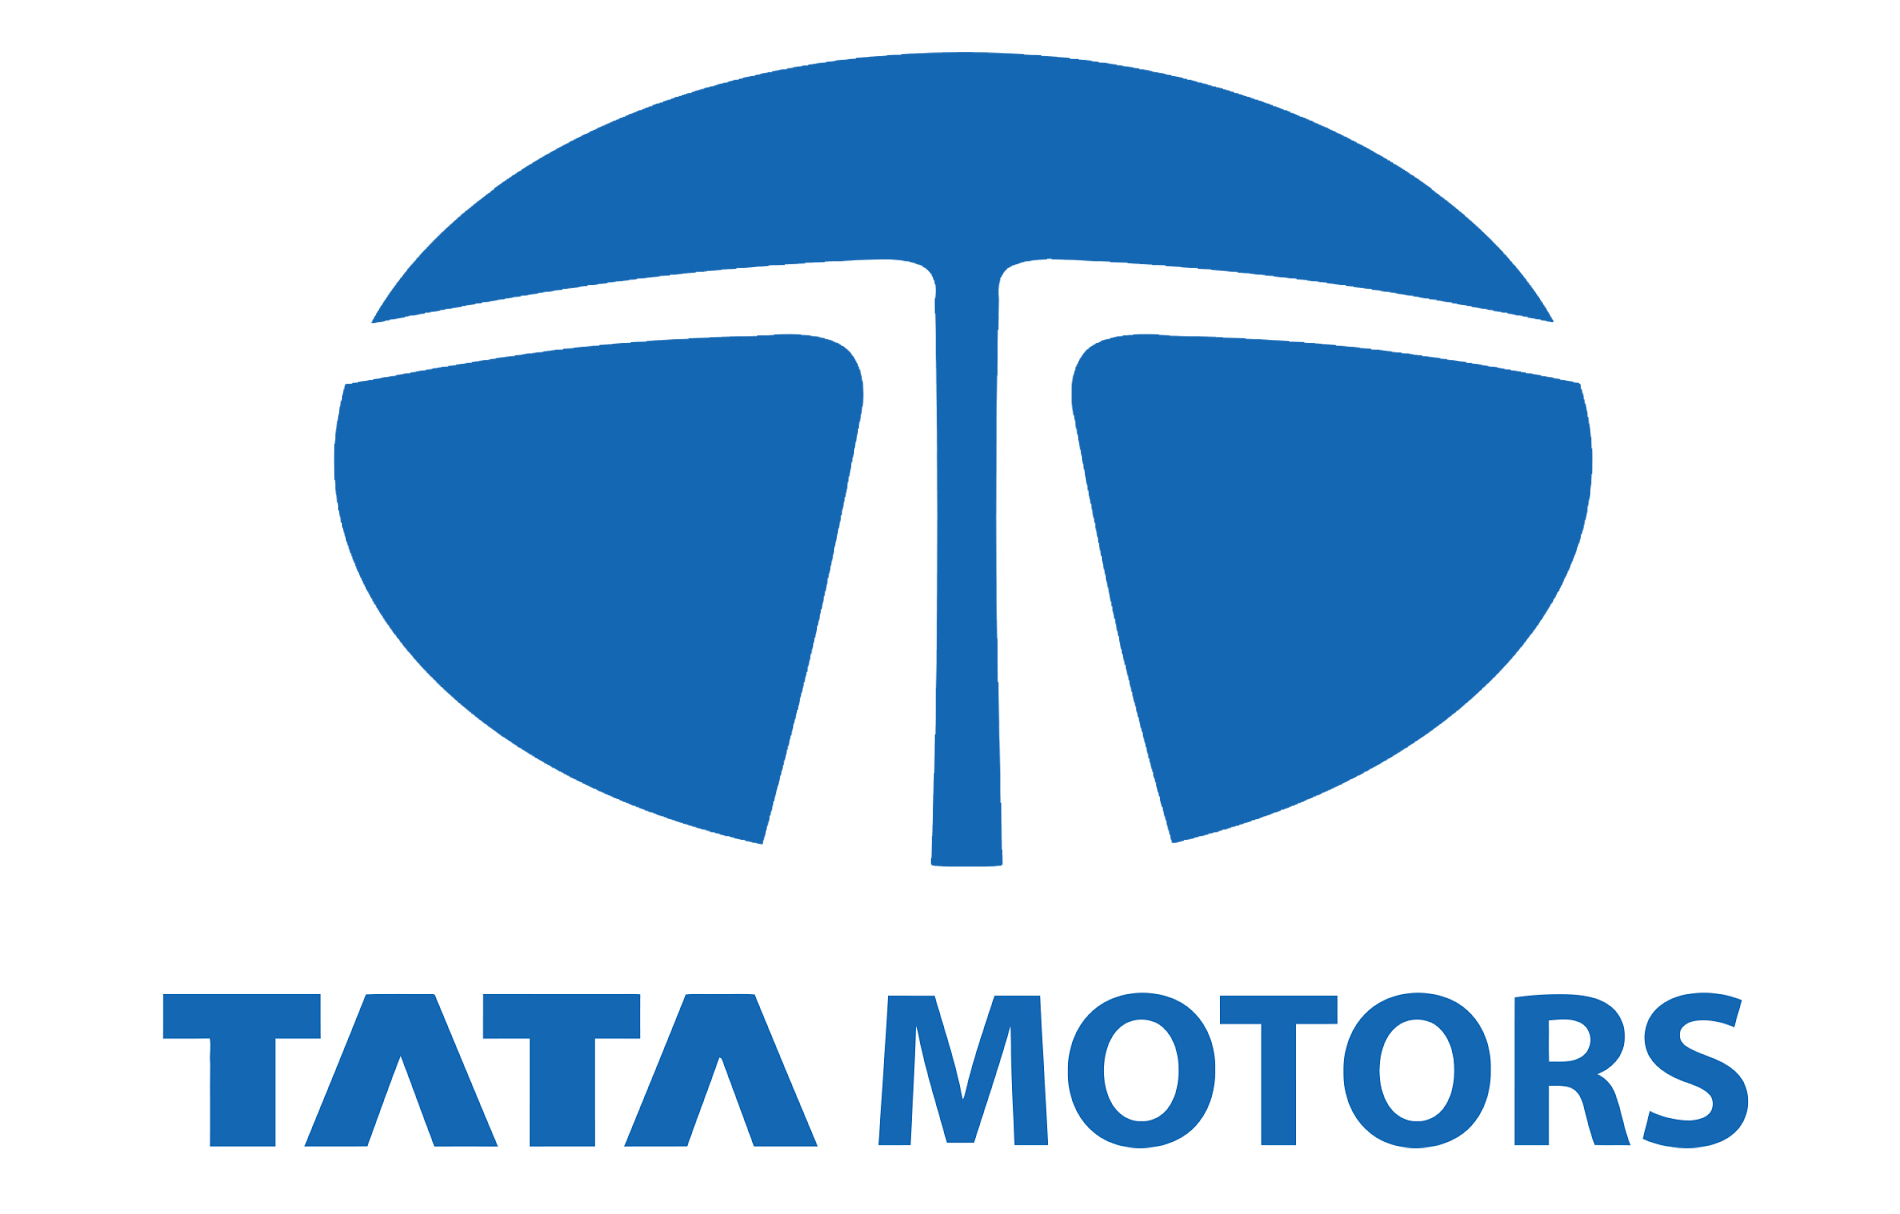 Tata Motors Cars Showroom - Shreeji Automart Pvt Ltd Logo